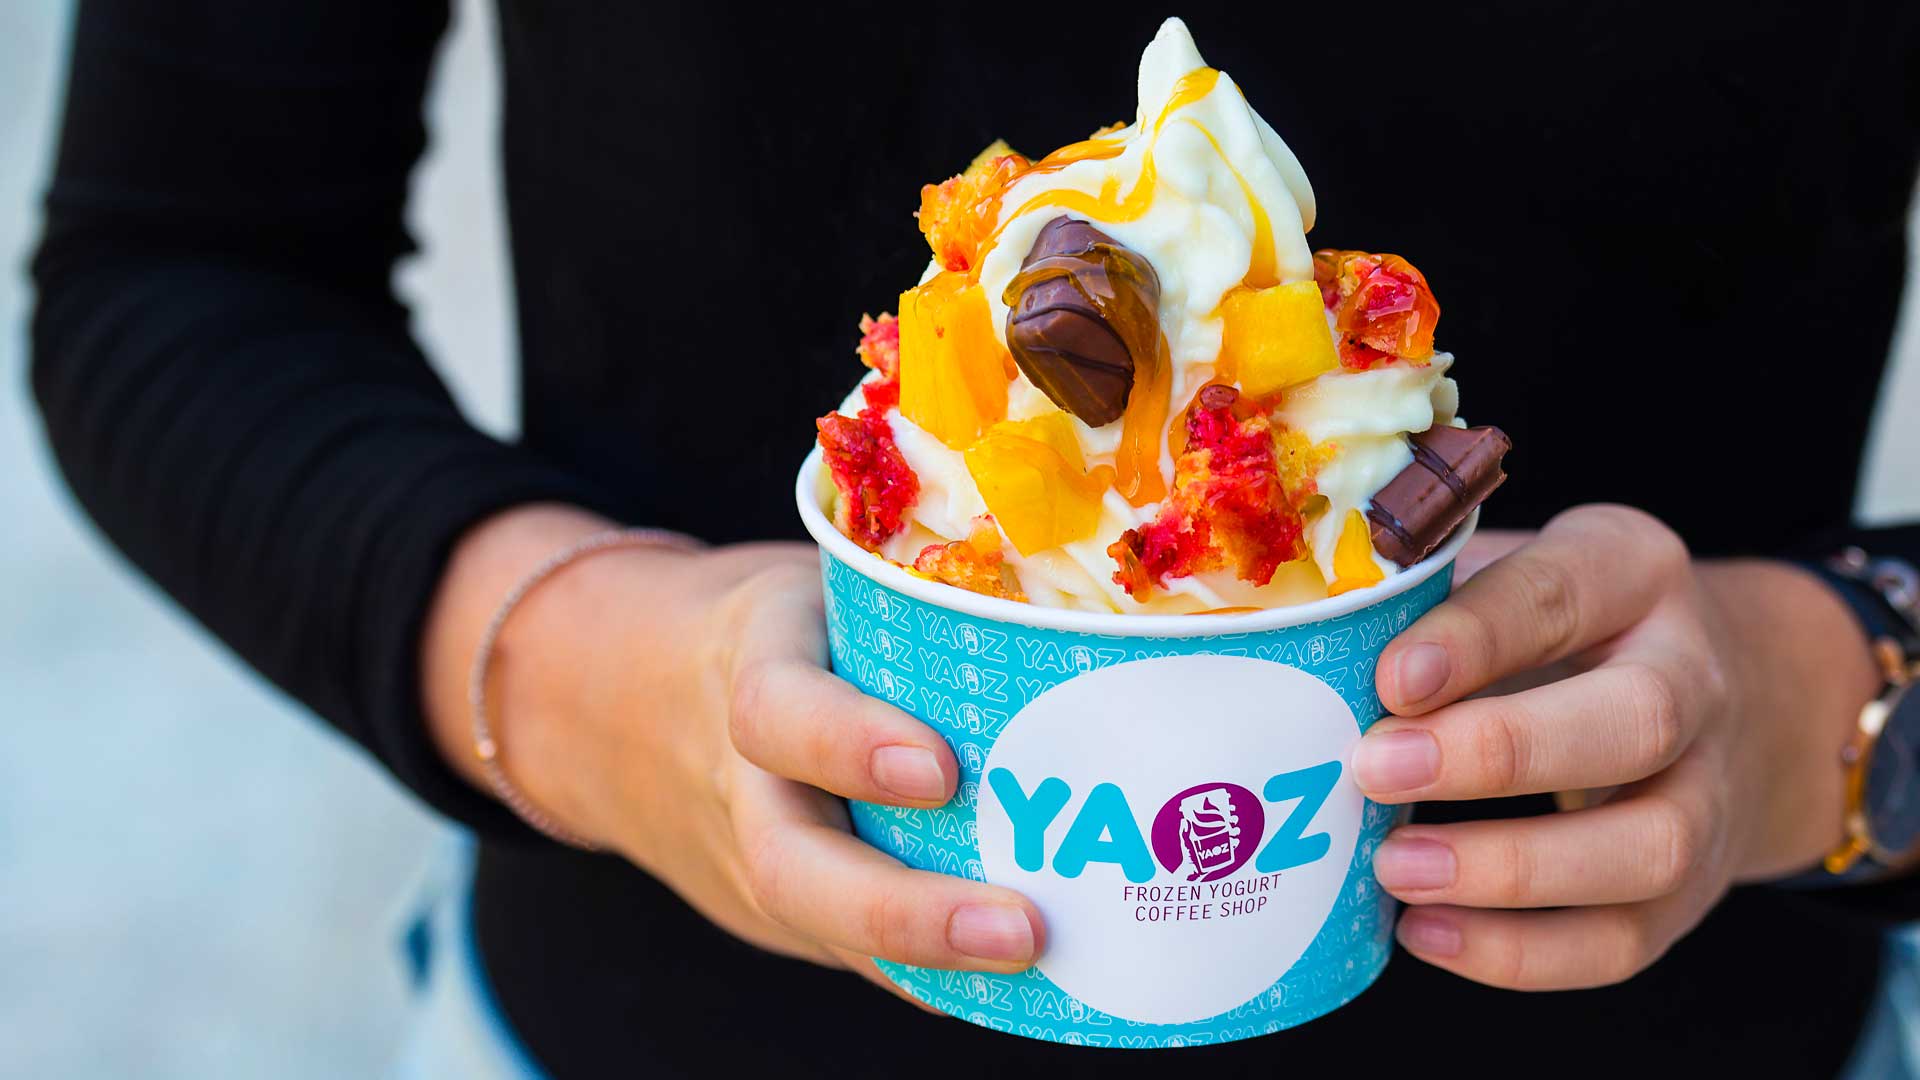 yaoz, franchise de coffee shop et yaourts glacés